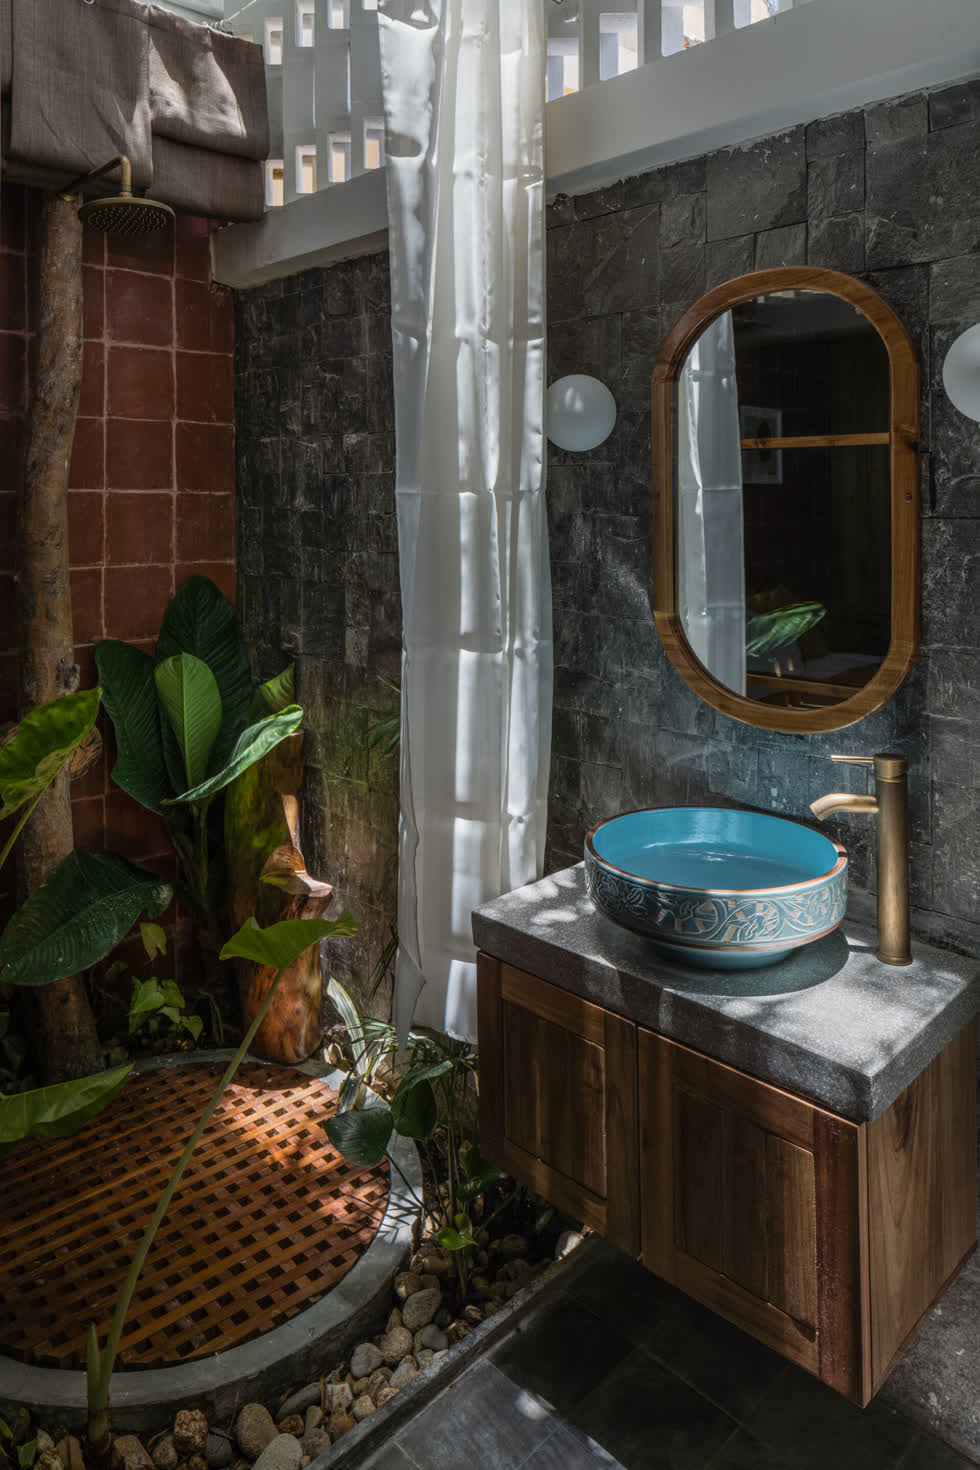 Phòng tắm được bày trí độc đáo với sỏi và cây xanh, ngăn cách với phòng ngủ bởi một lớp cửa mở trượt, khi cần có thể kéo rèm để tạo sự riêng tư.